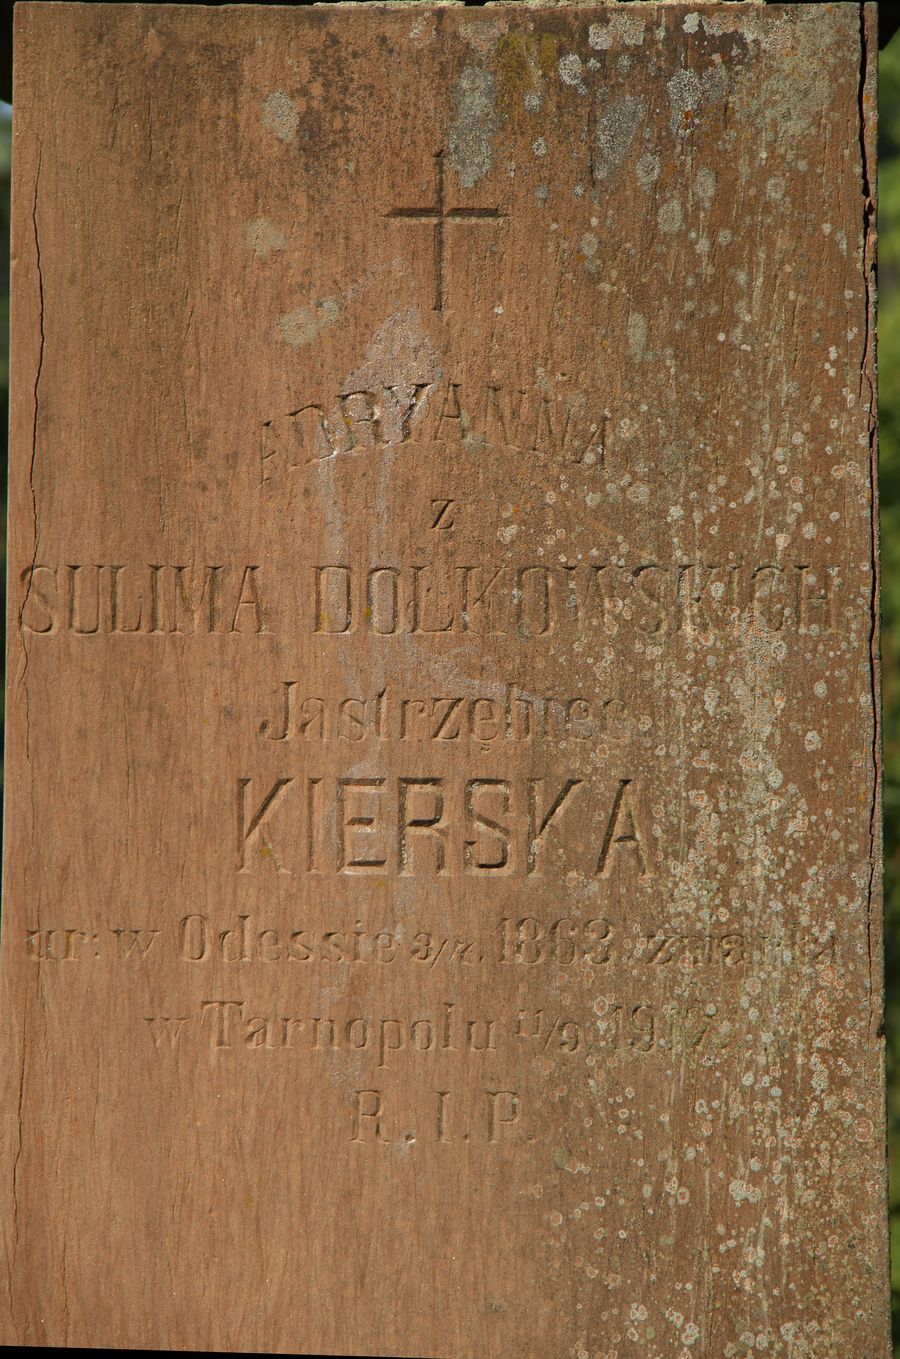 Fragment nagrobka Adrianny, Melanii i Stanisława Kierskich, cmentarz w Tarnopolu, stan z 2016